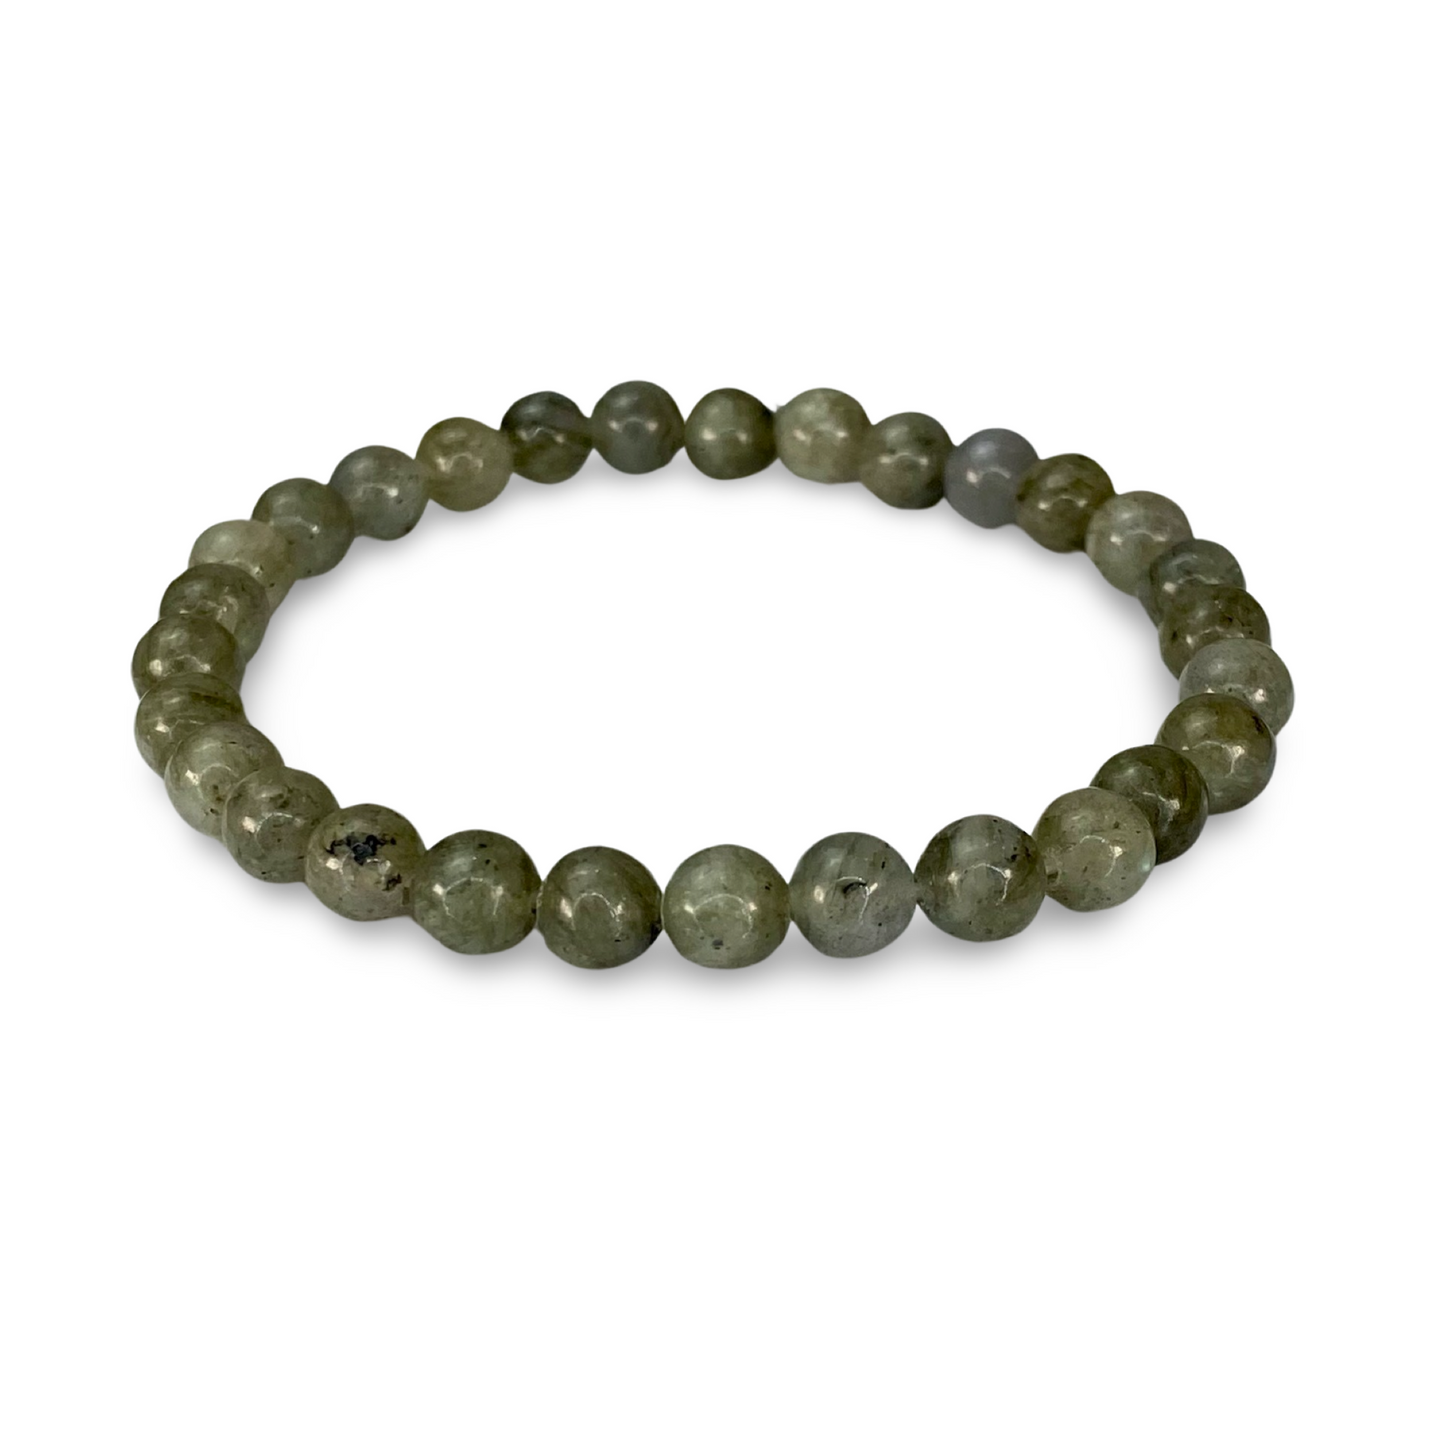 Beads Bracelets (Labradorite) (6 mm)